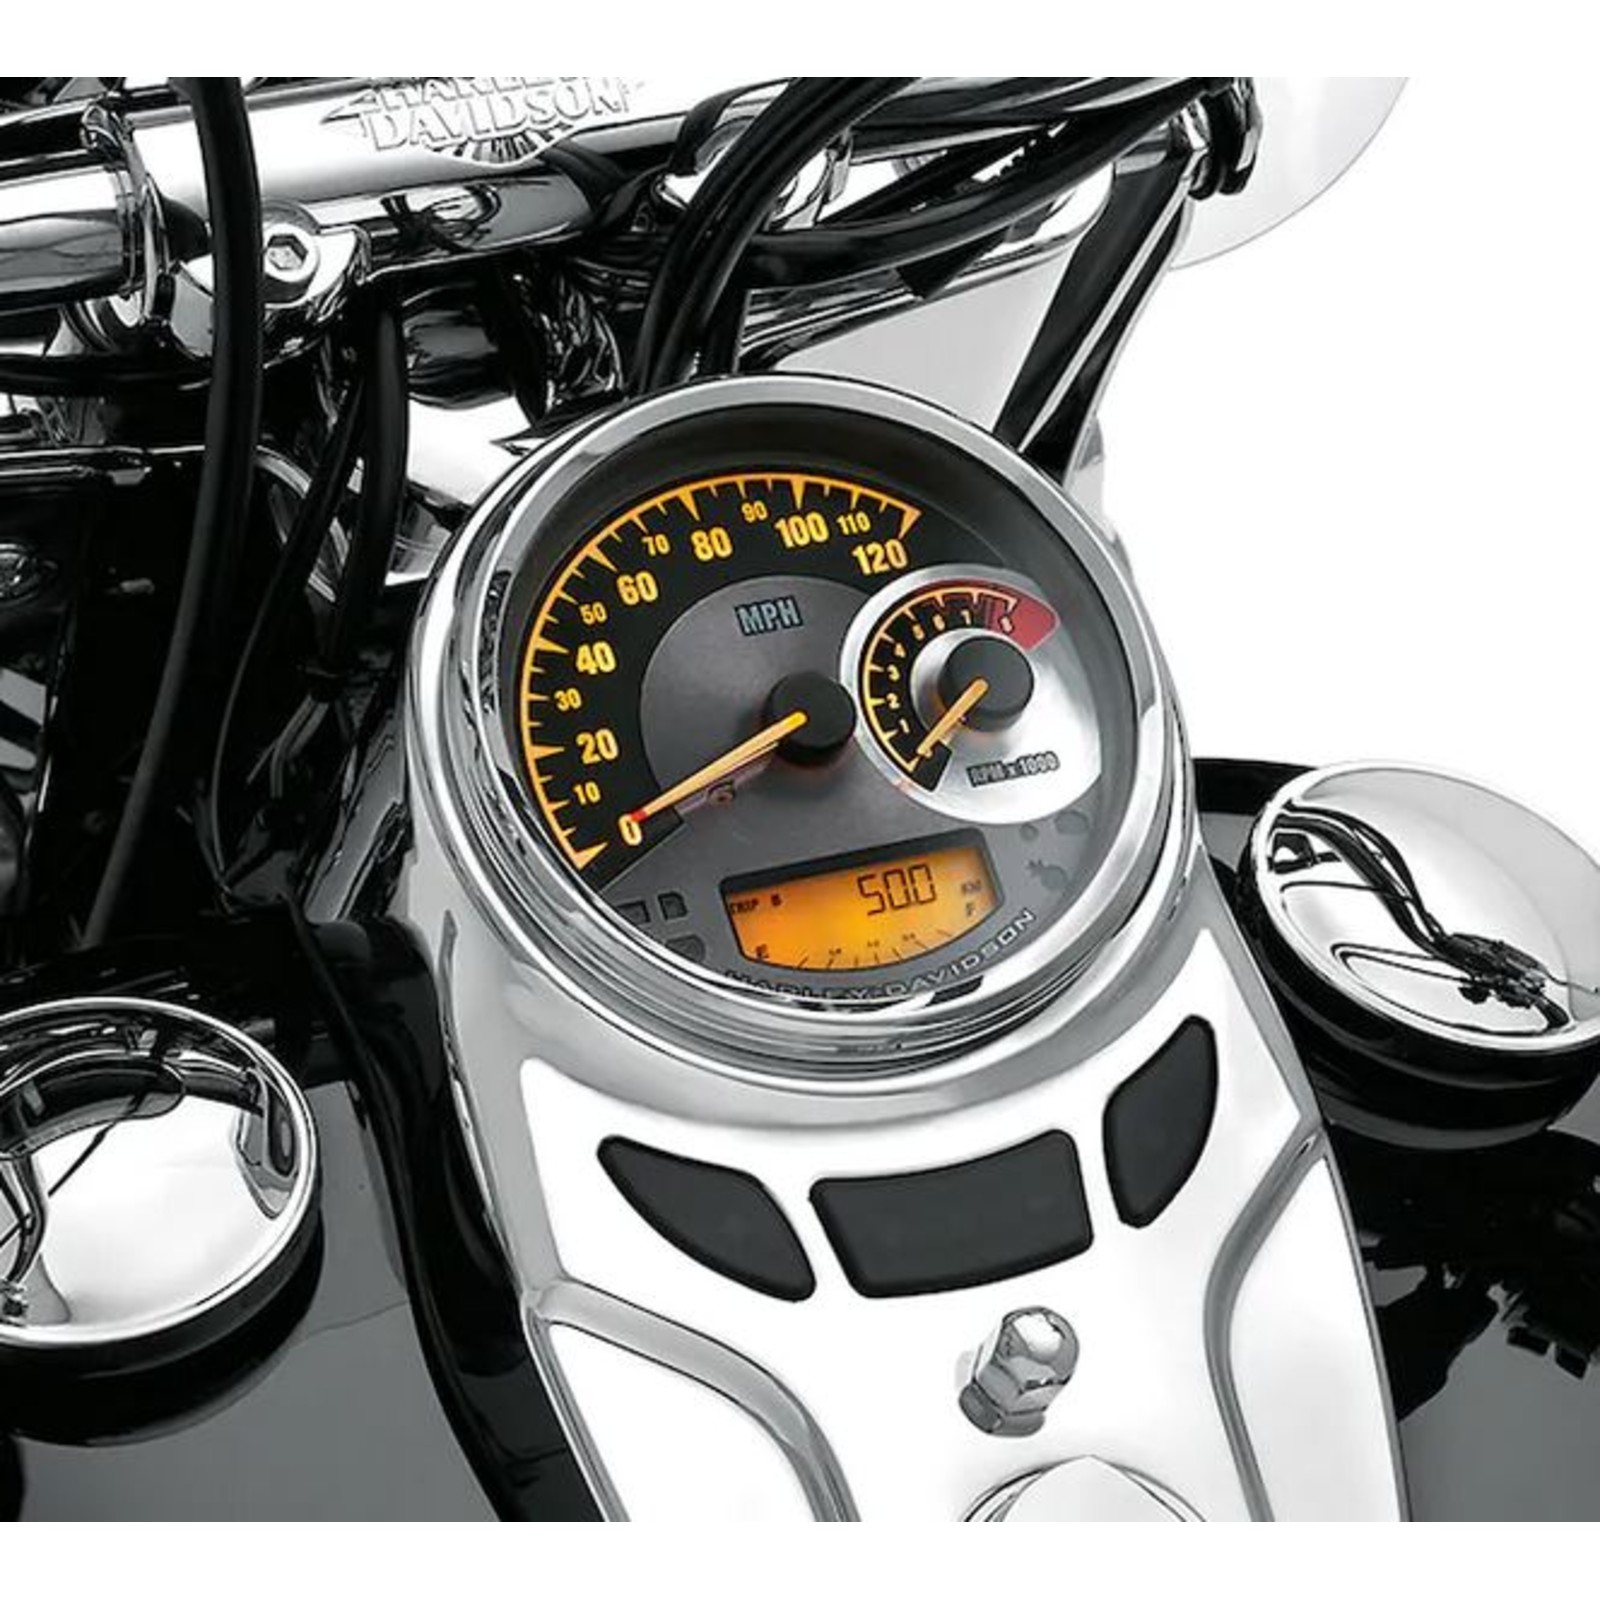 KM/H Tacho für Harley-Davidson Softail  Cam Evo Motorrad 